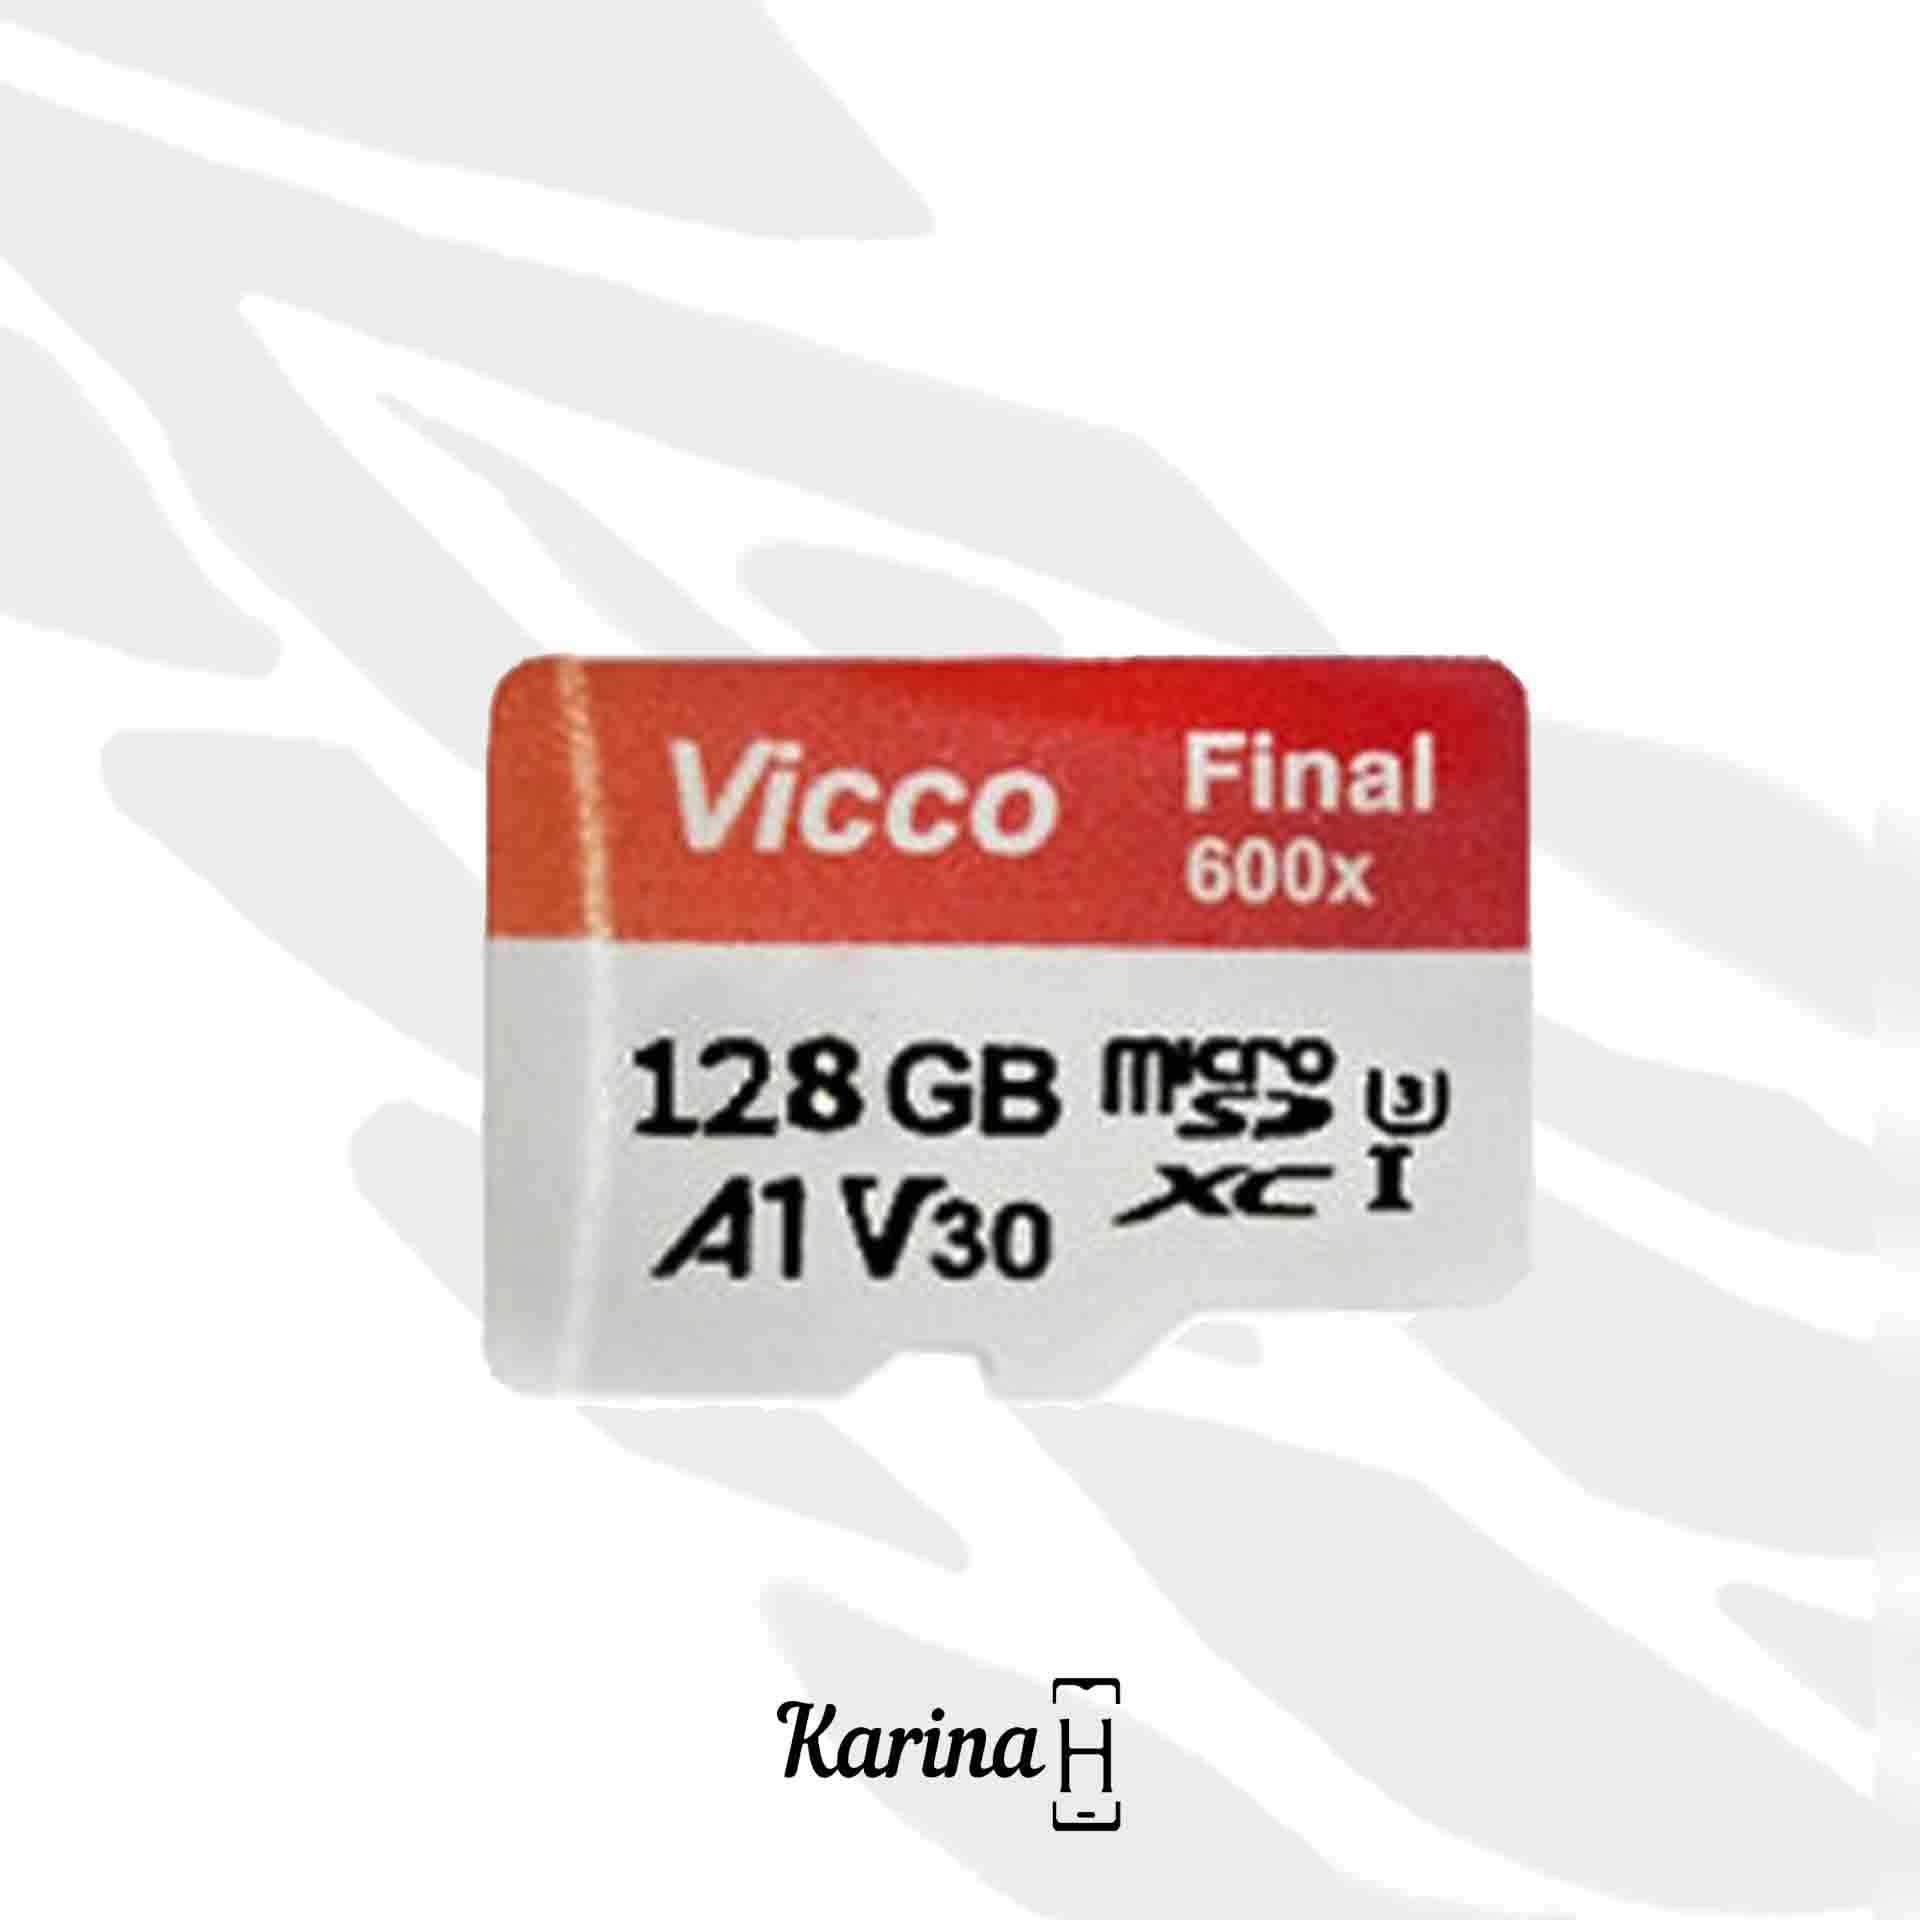 کارت حافظه microSDXC ویکومن مدل 600X Plus کلاس 10 ظرفیت 128 گیگابایت